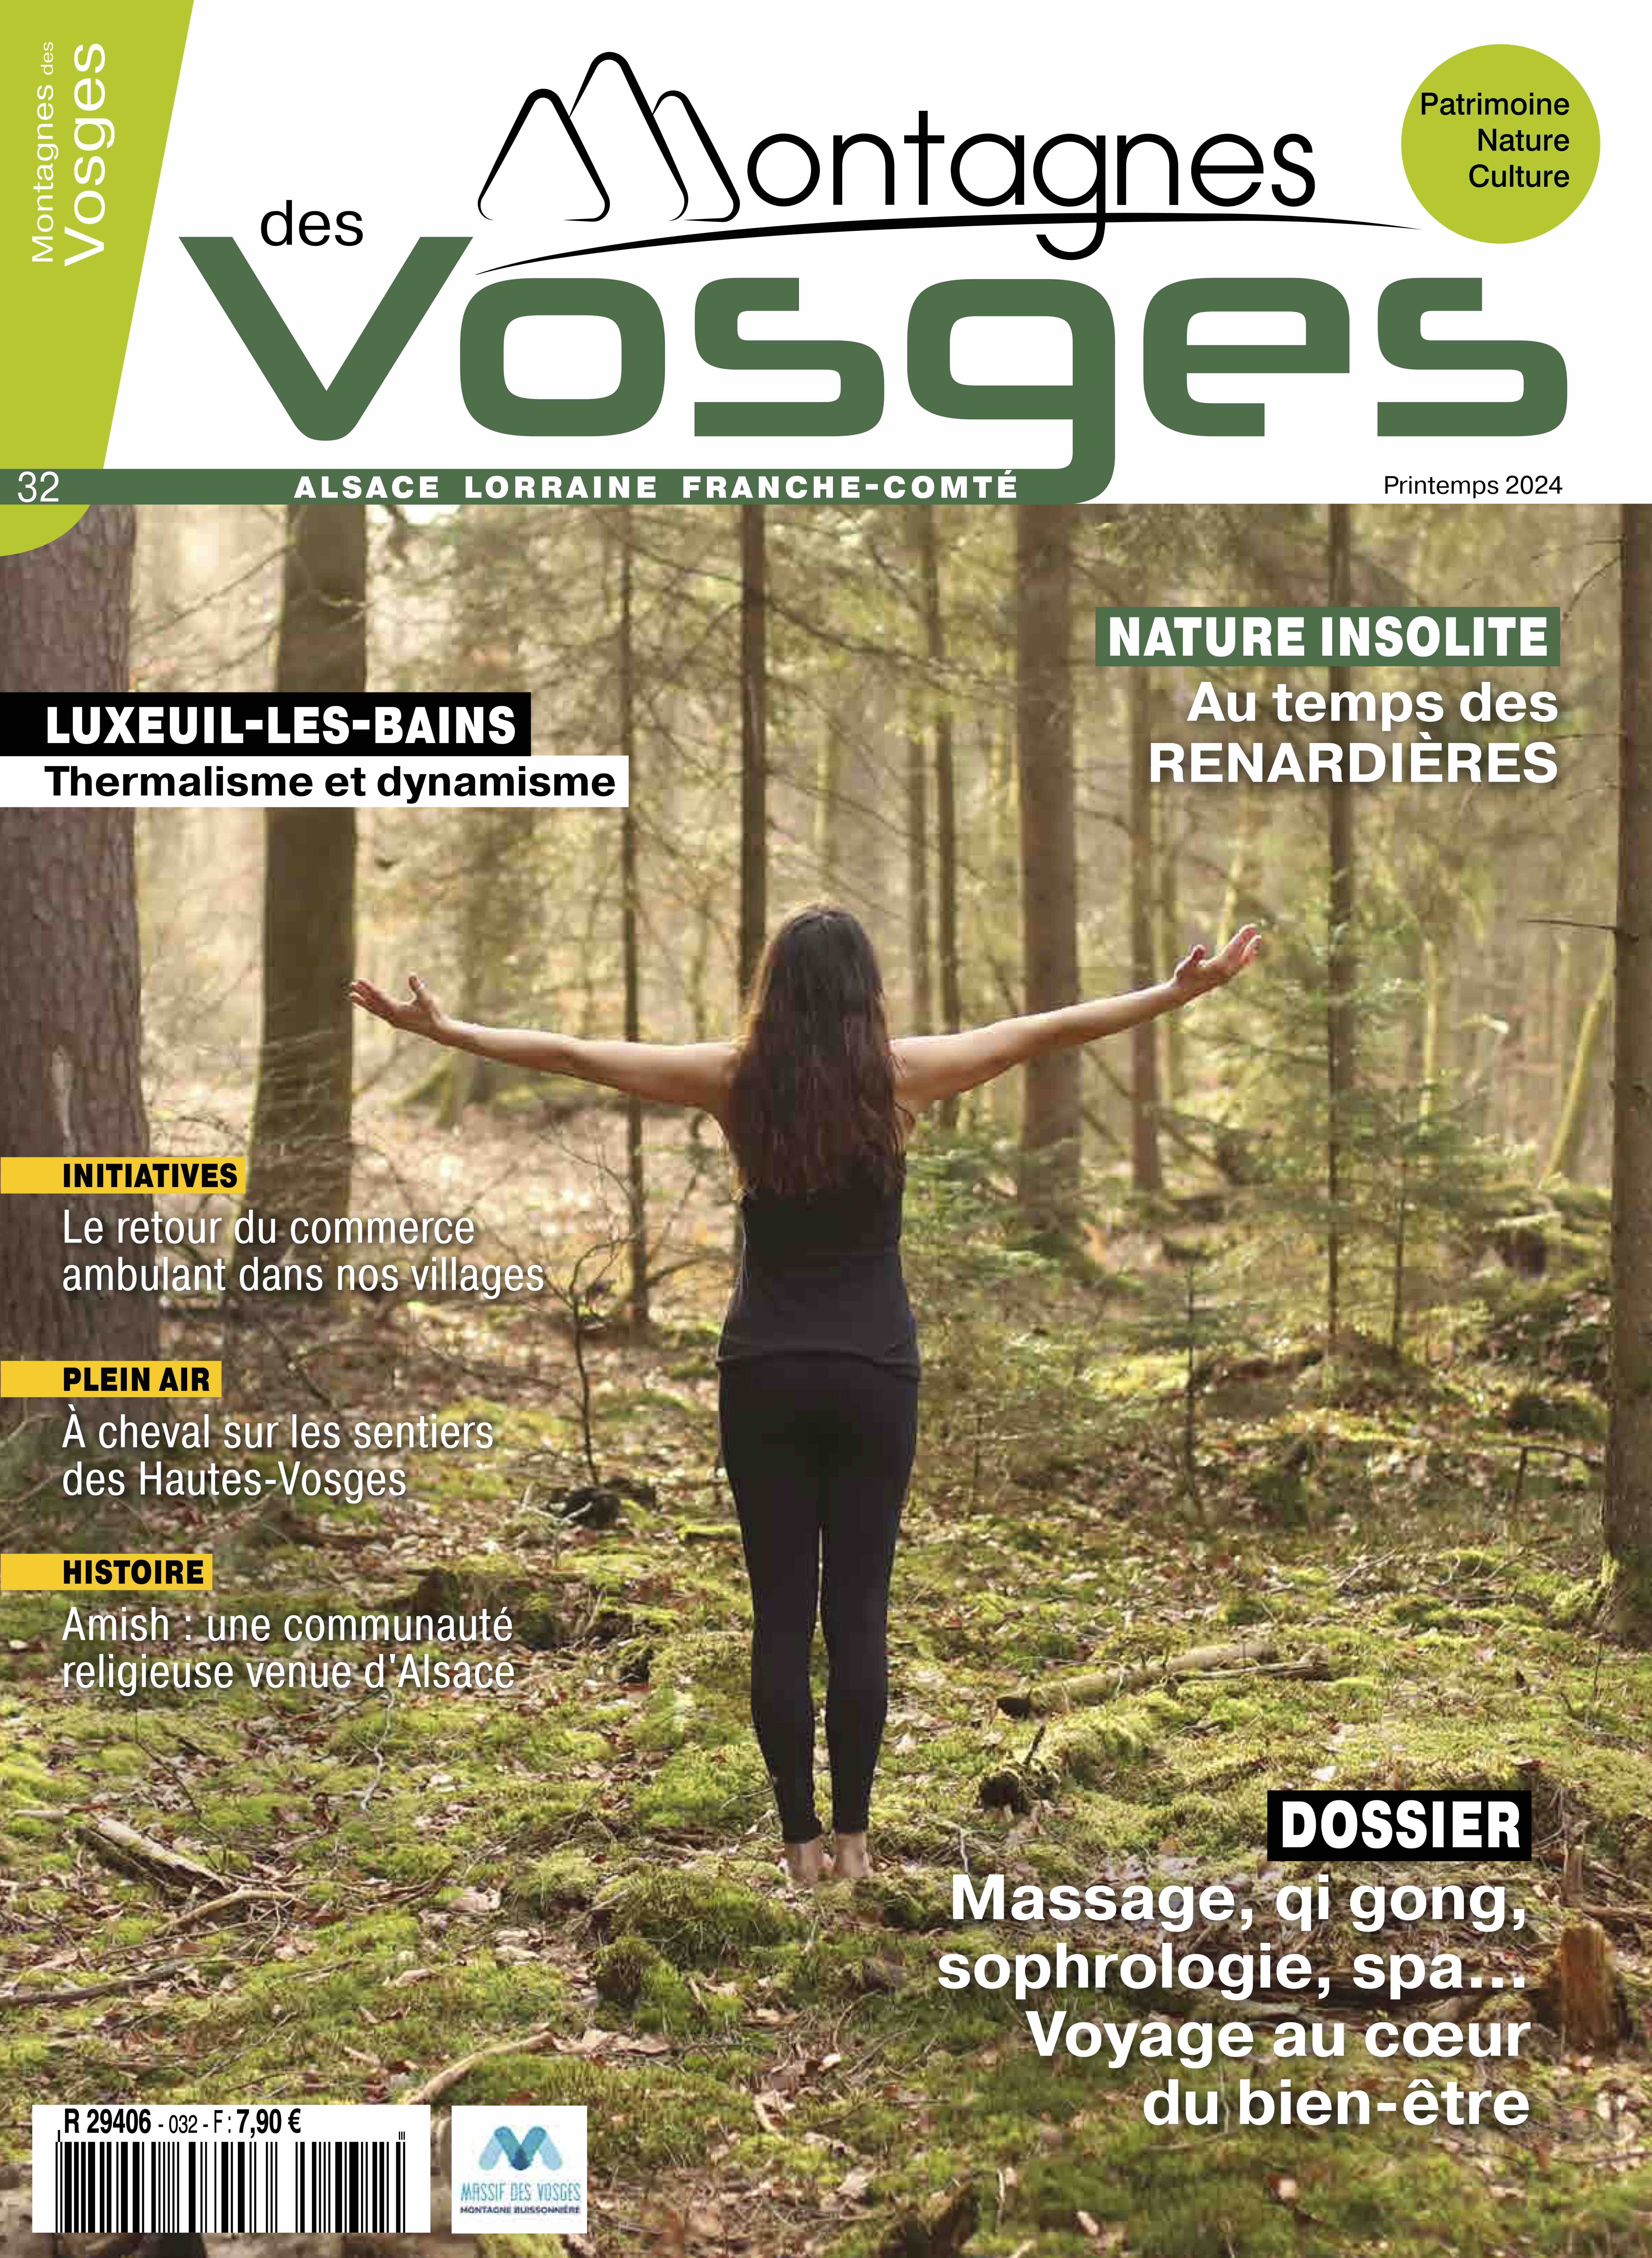 Magazine Montagnes des vosges - Le numéro 32 de printemps 2024 est en vente !